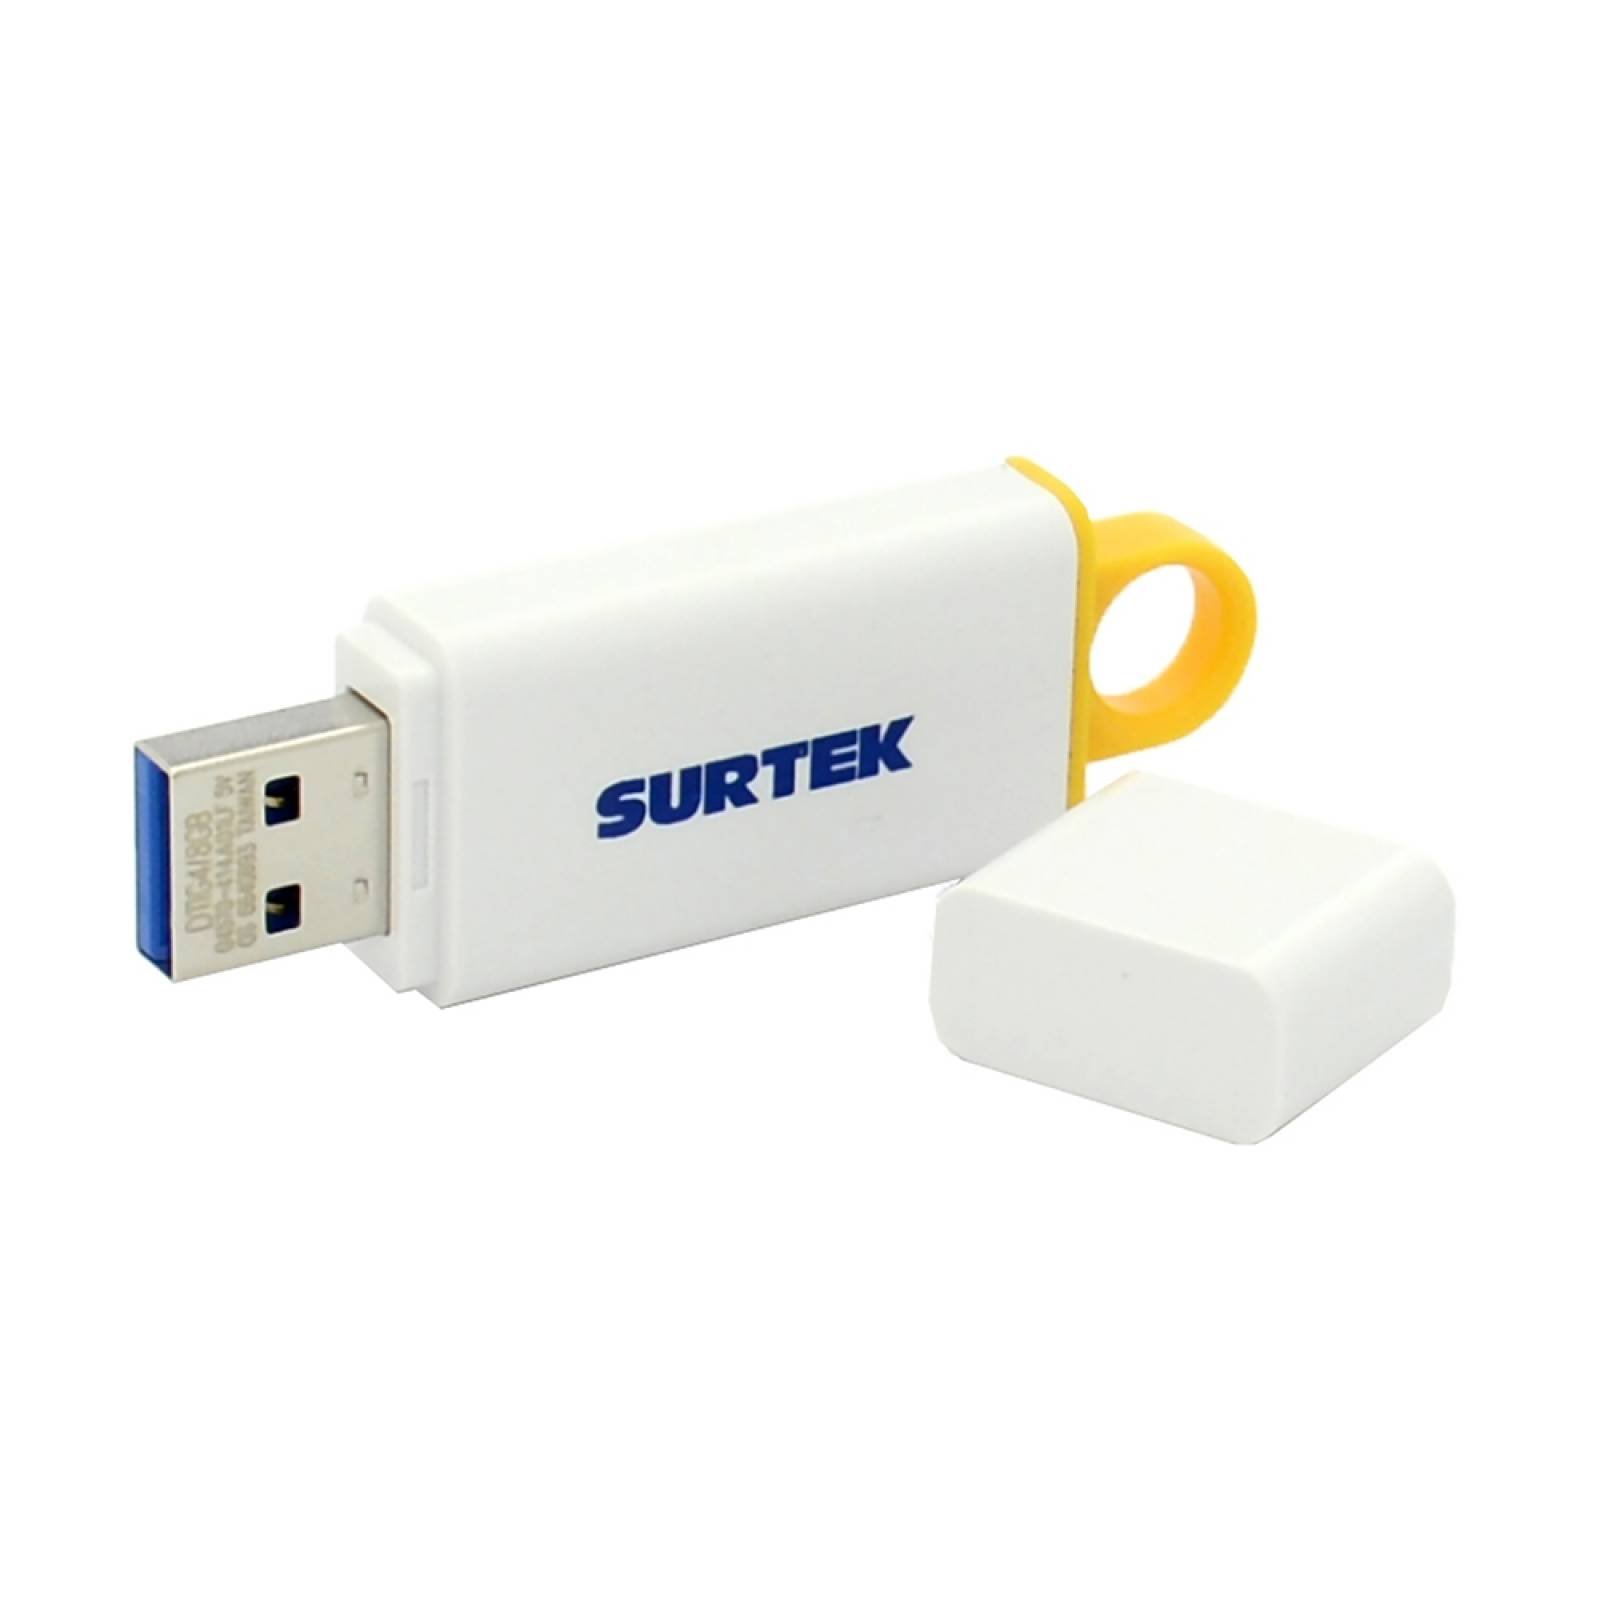 Memoria USB 8GB MUSB8S Surtek MUSB8S Surtek